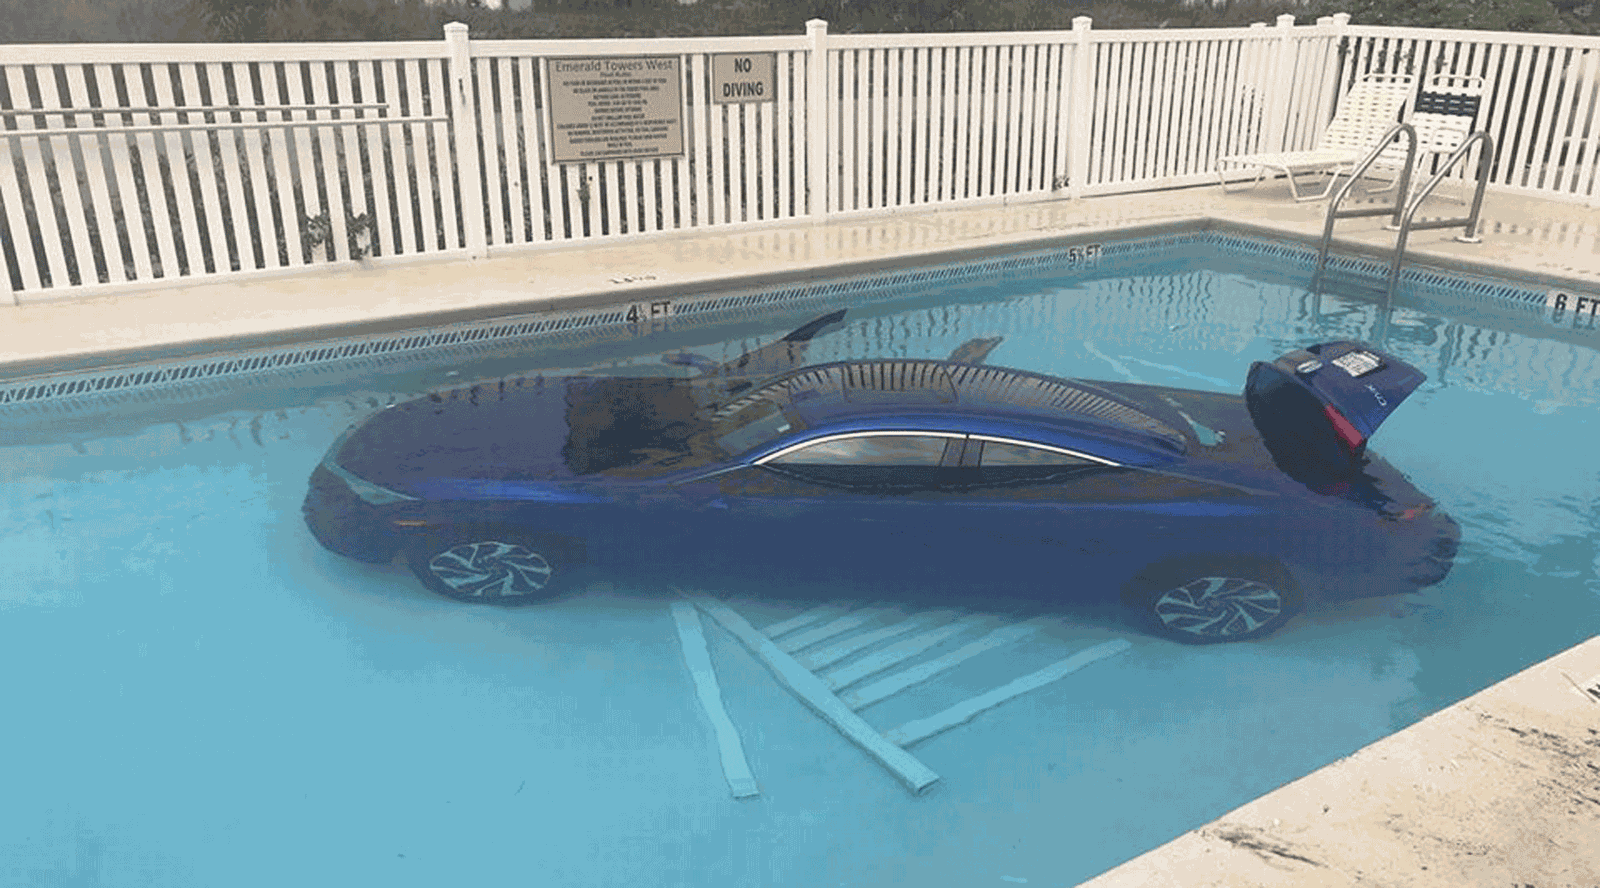 Motorista esquece de puxar o freio de mão e carro cai em piscina nos EUA